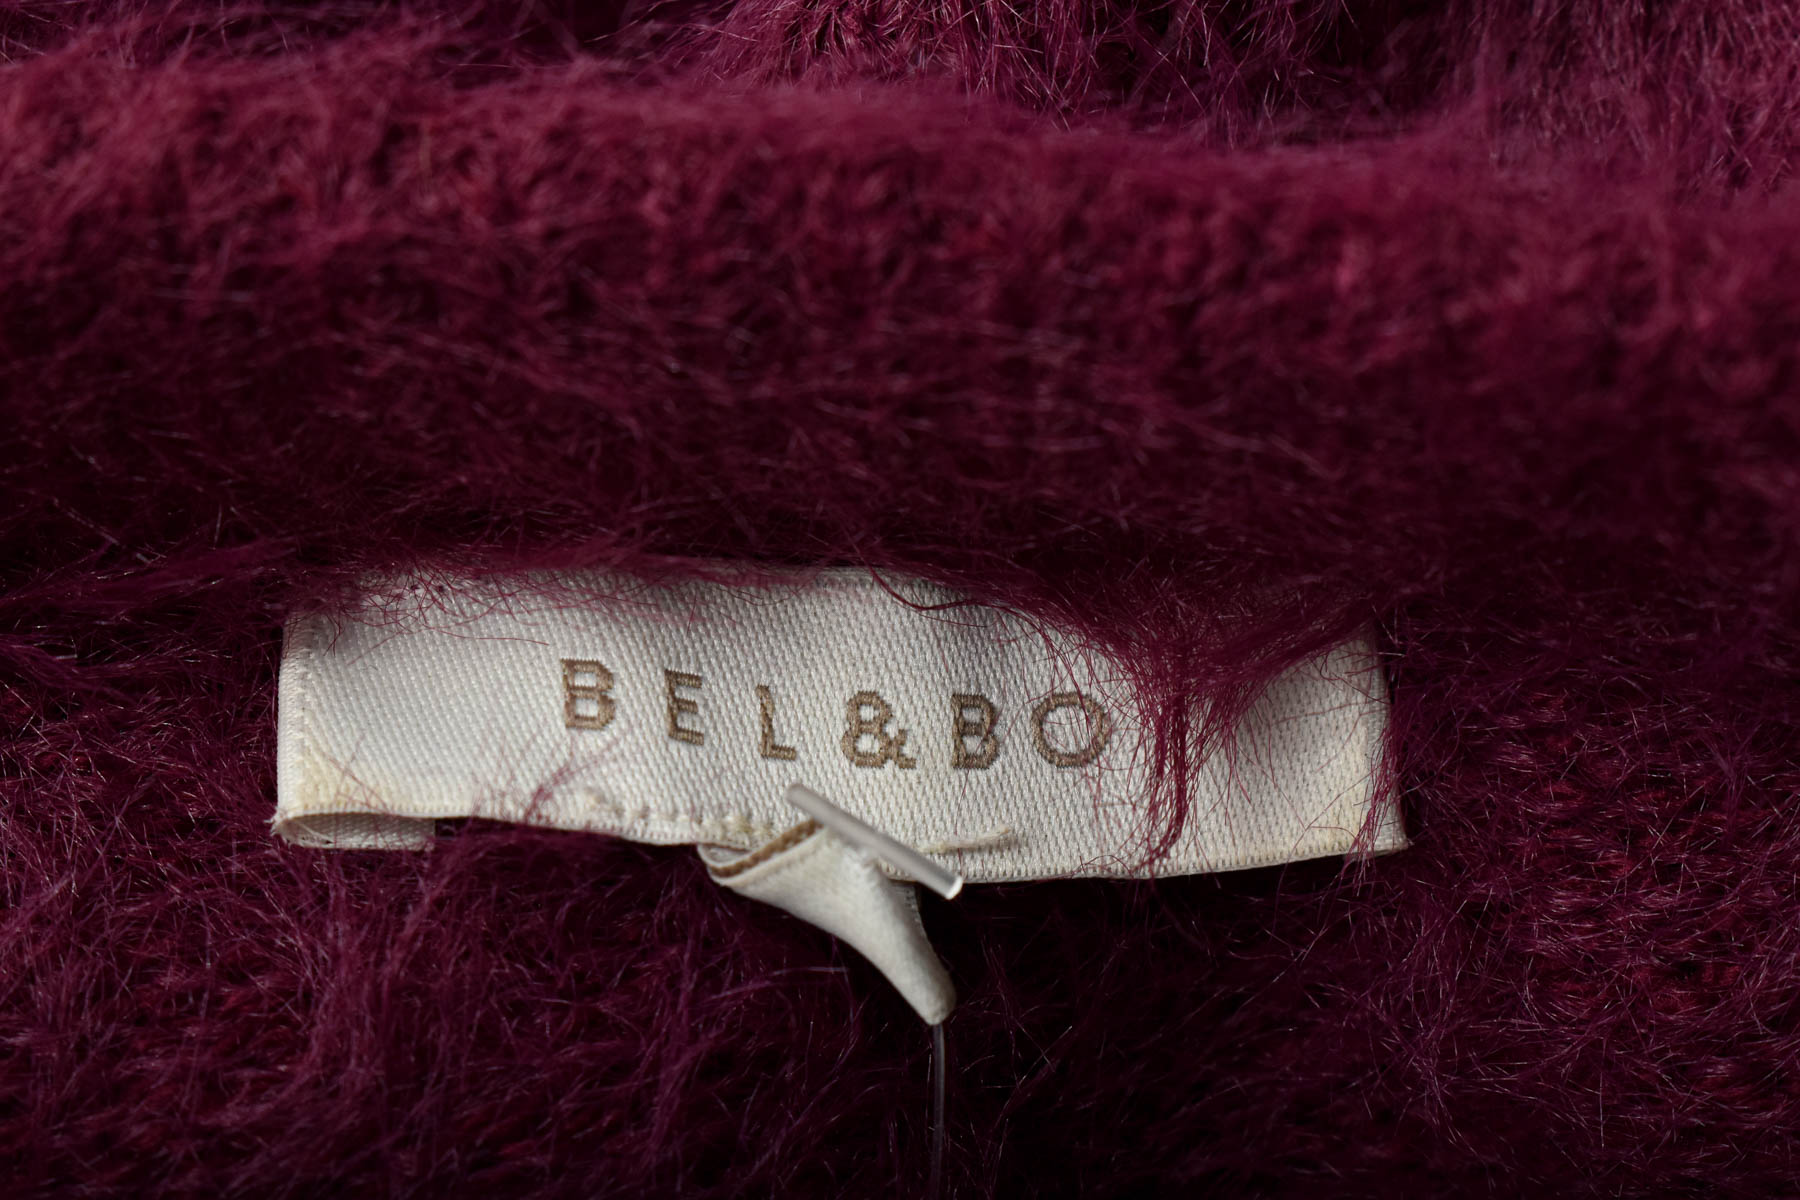 Women's sweater - BEL & BO - 2